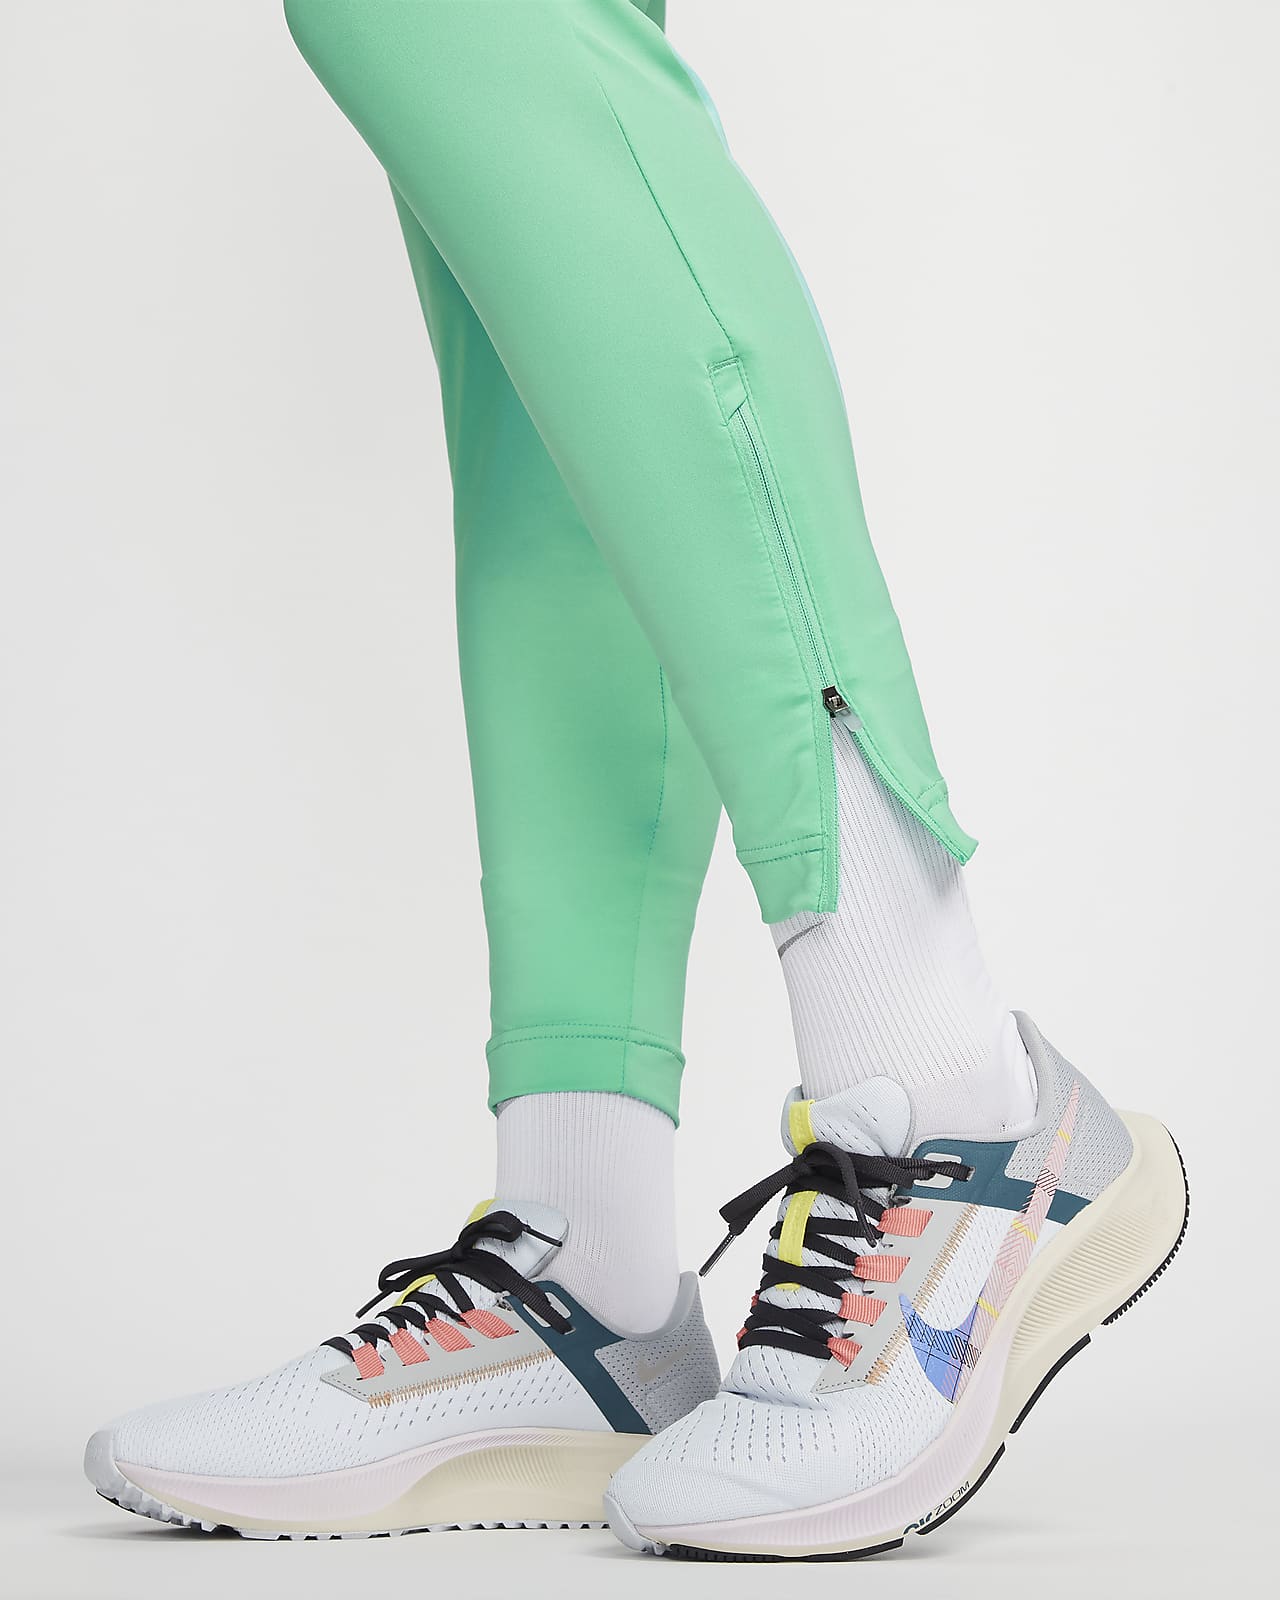 Jordan Joggers & Sweatpants. Nike NZ